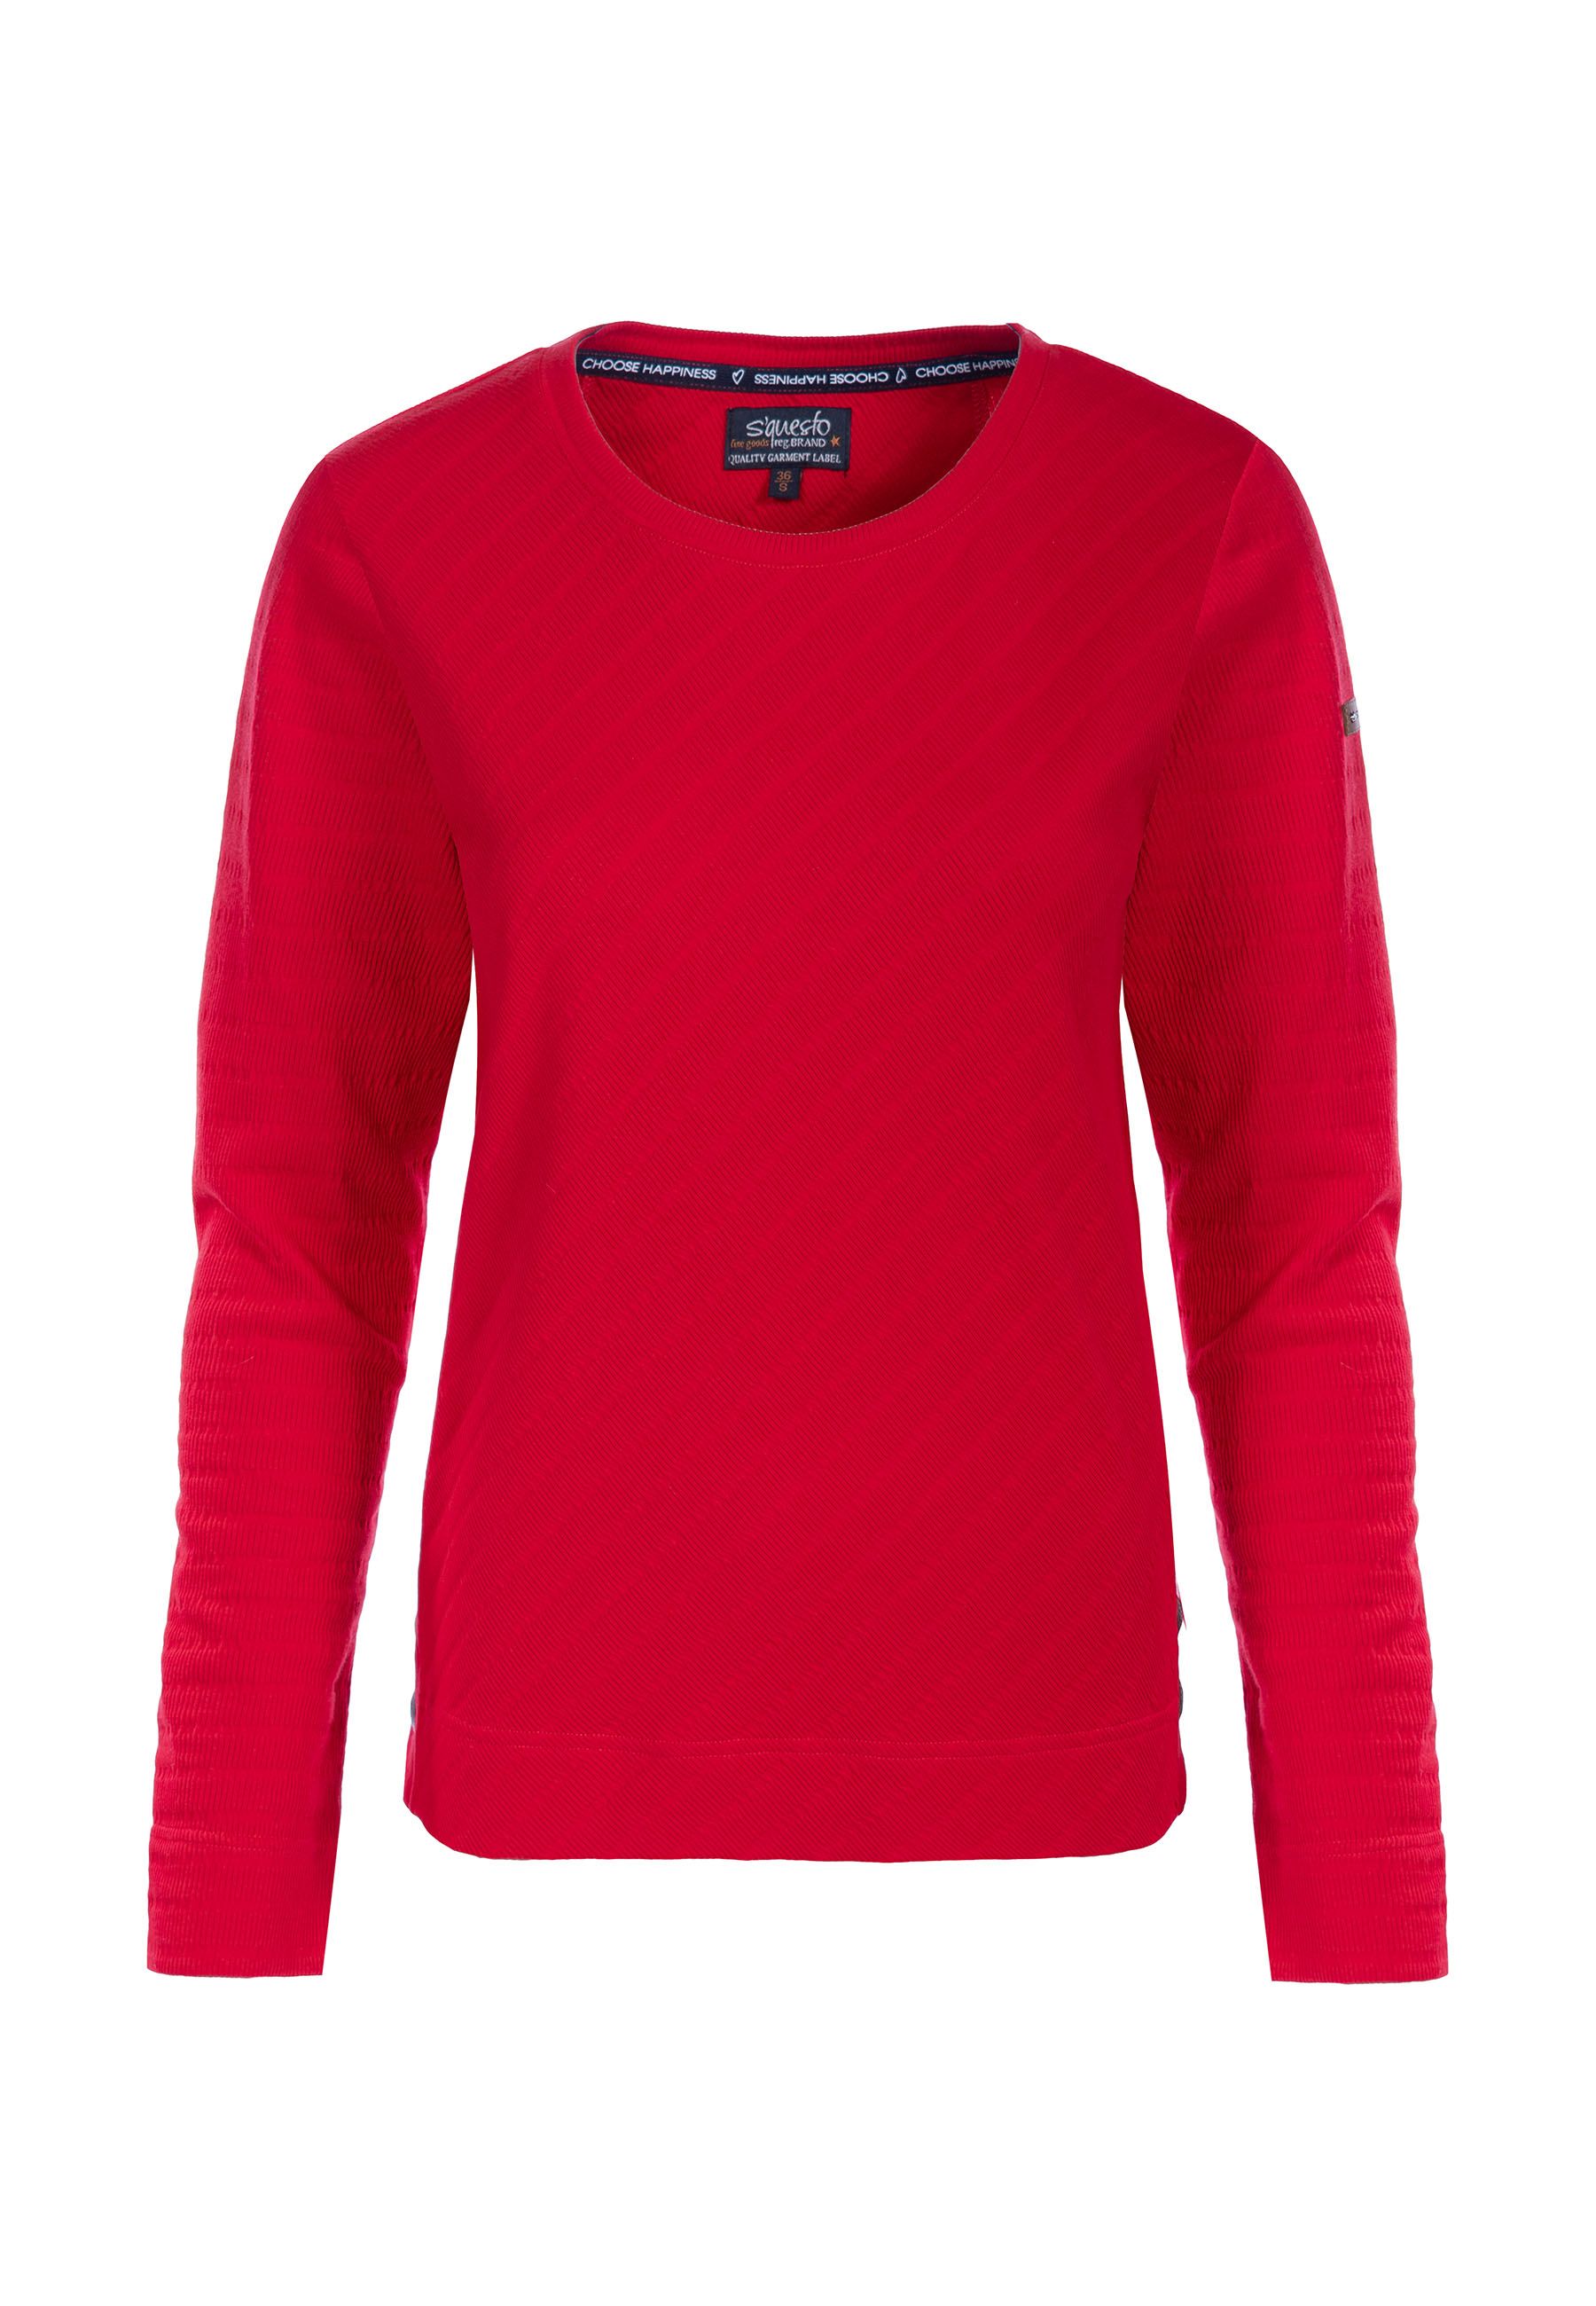 Soquesto Sweatshirt Lara in red und navy